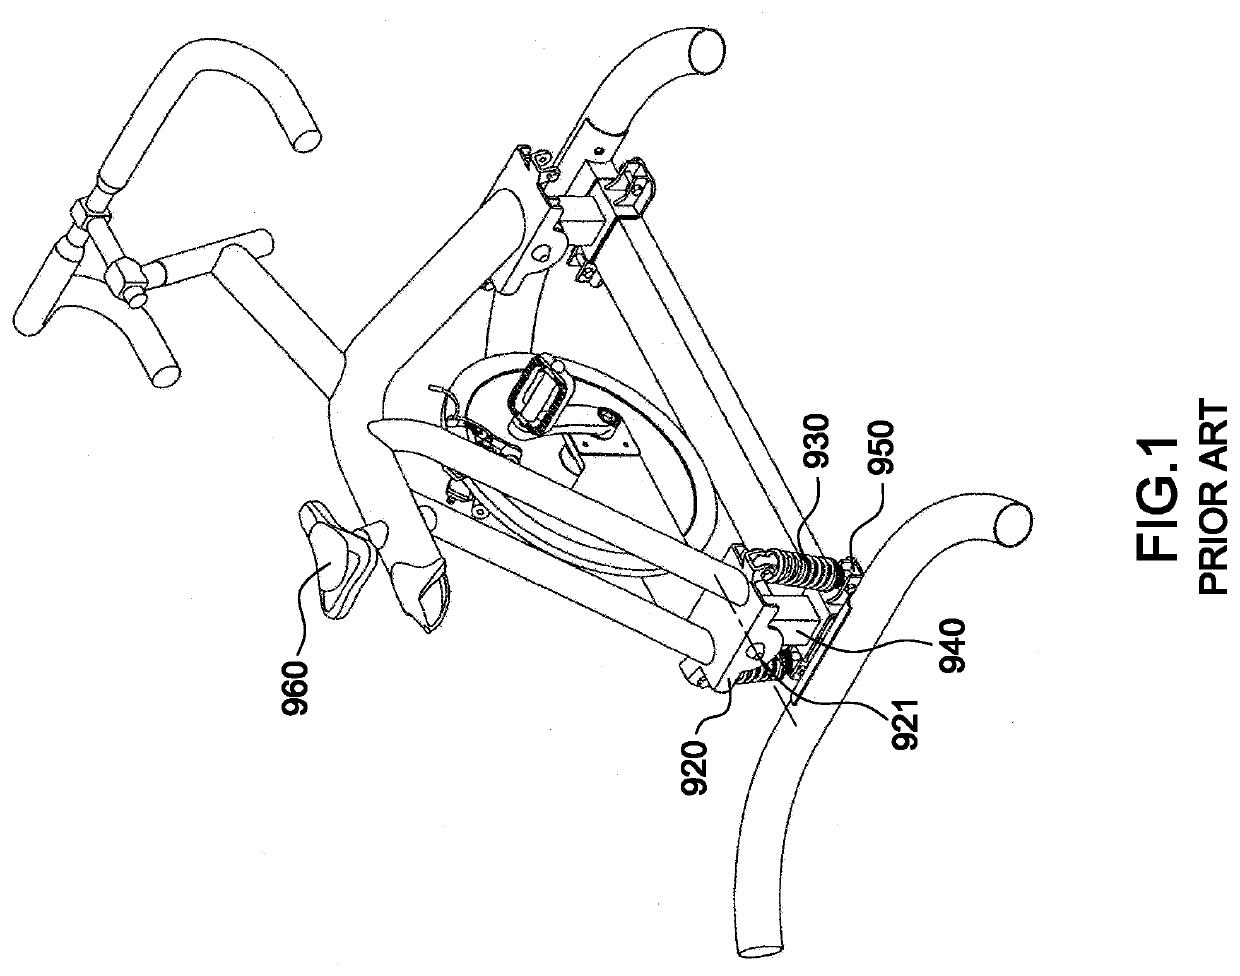 Swingable exercise bicycle mechanism